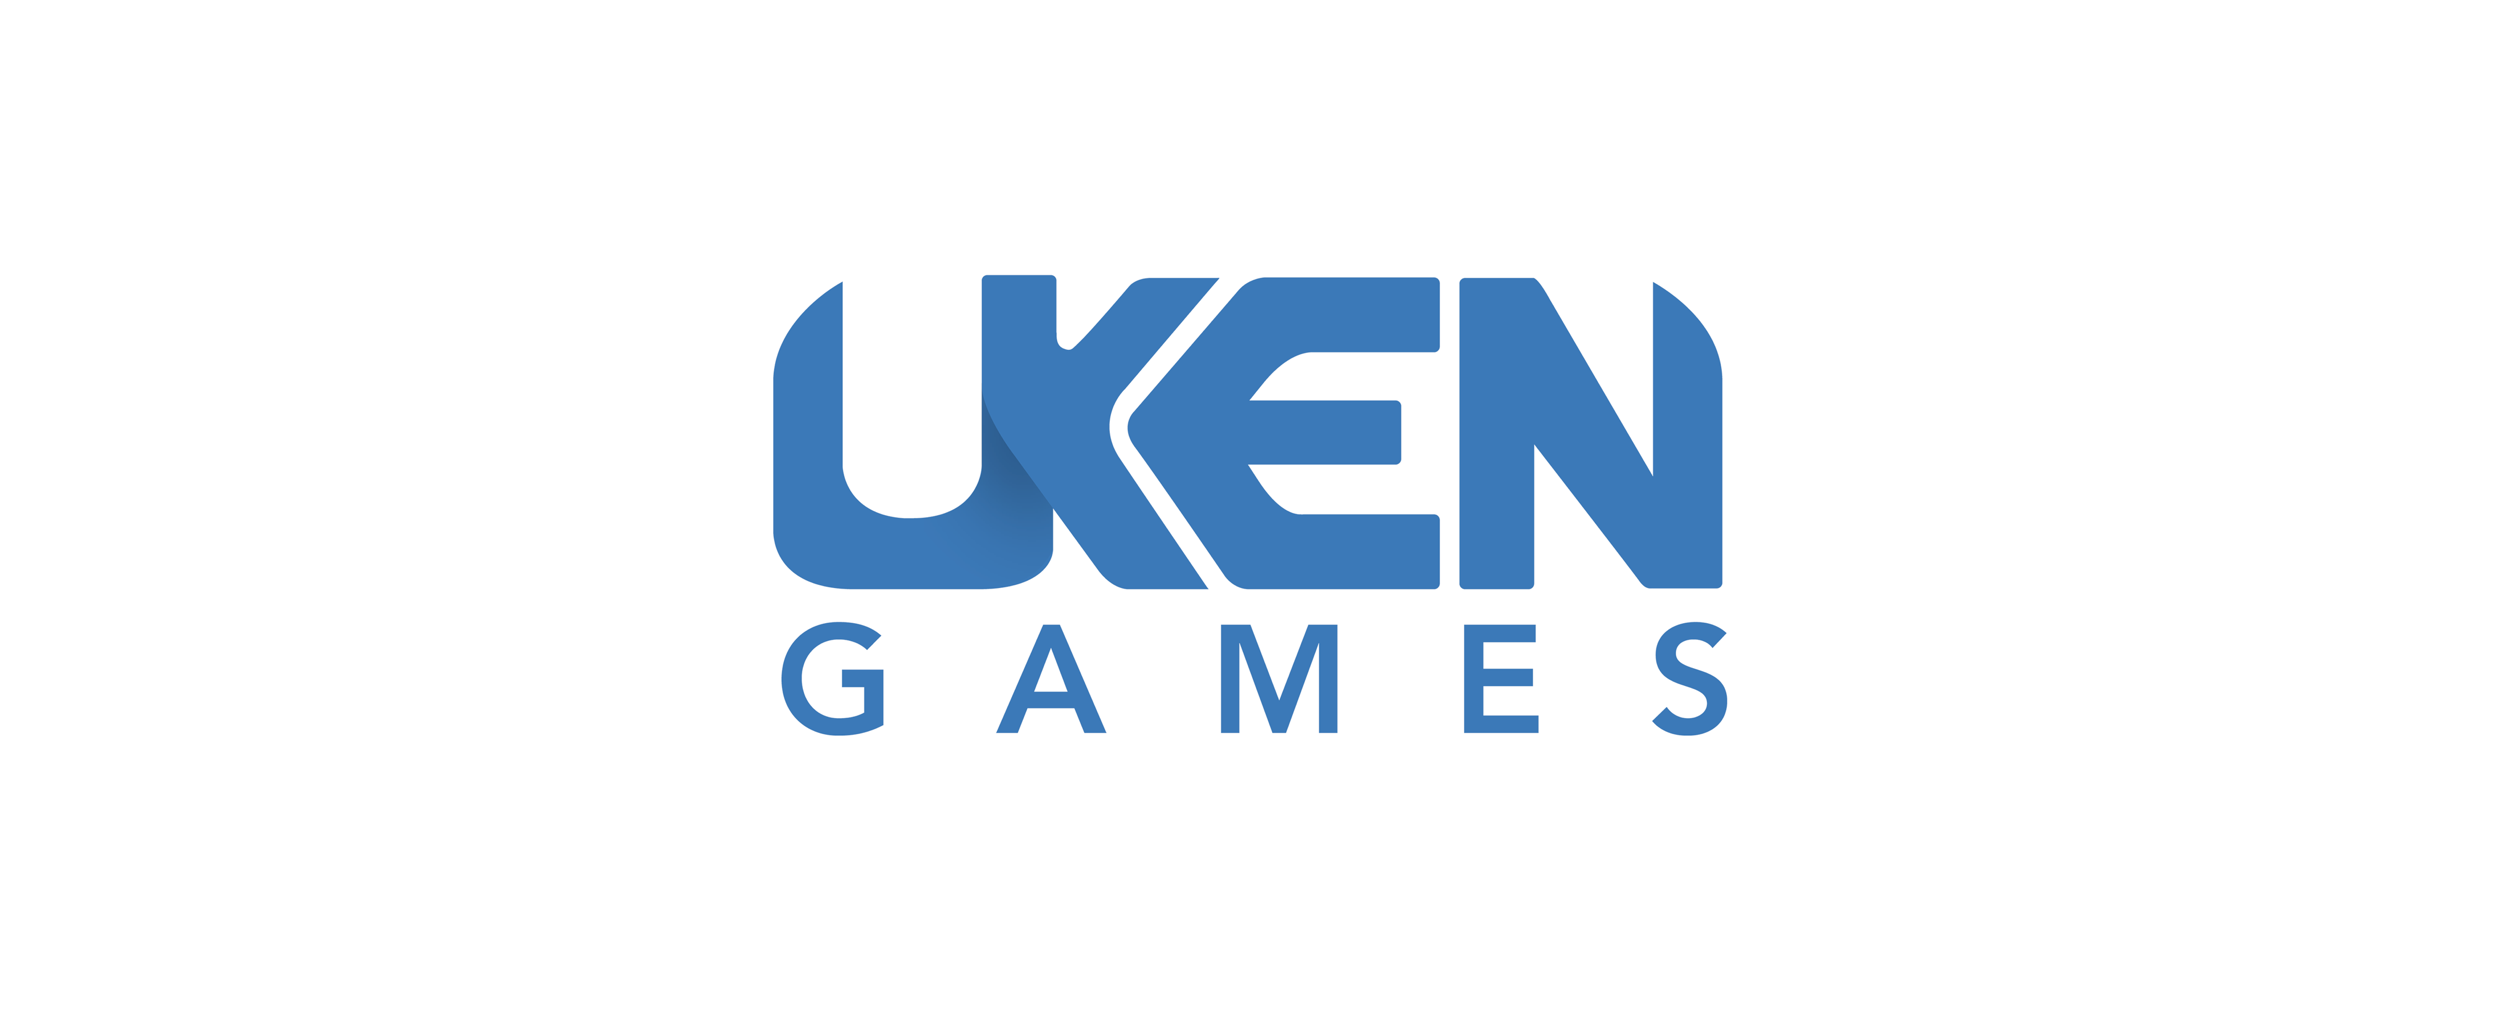 Uken Games